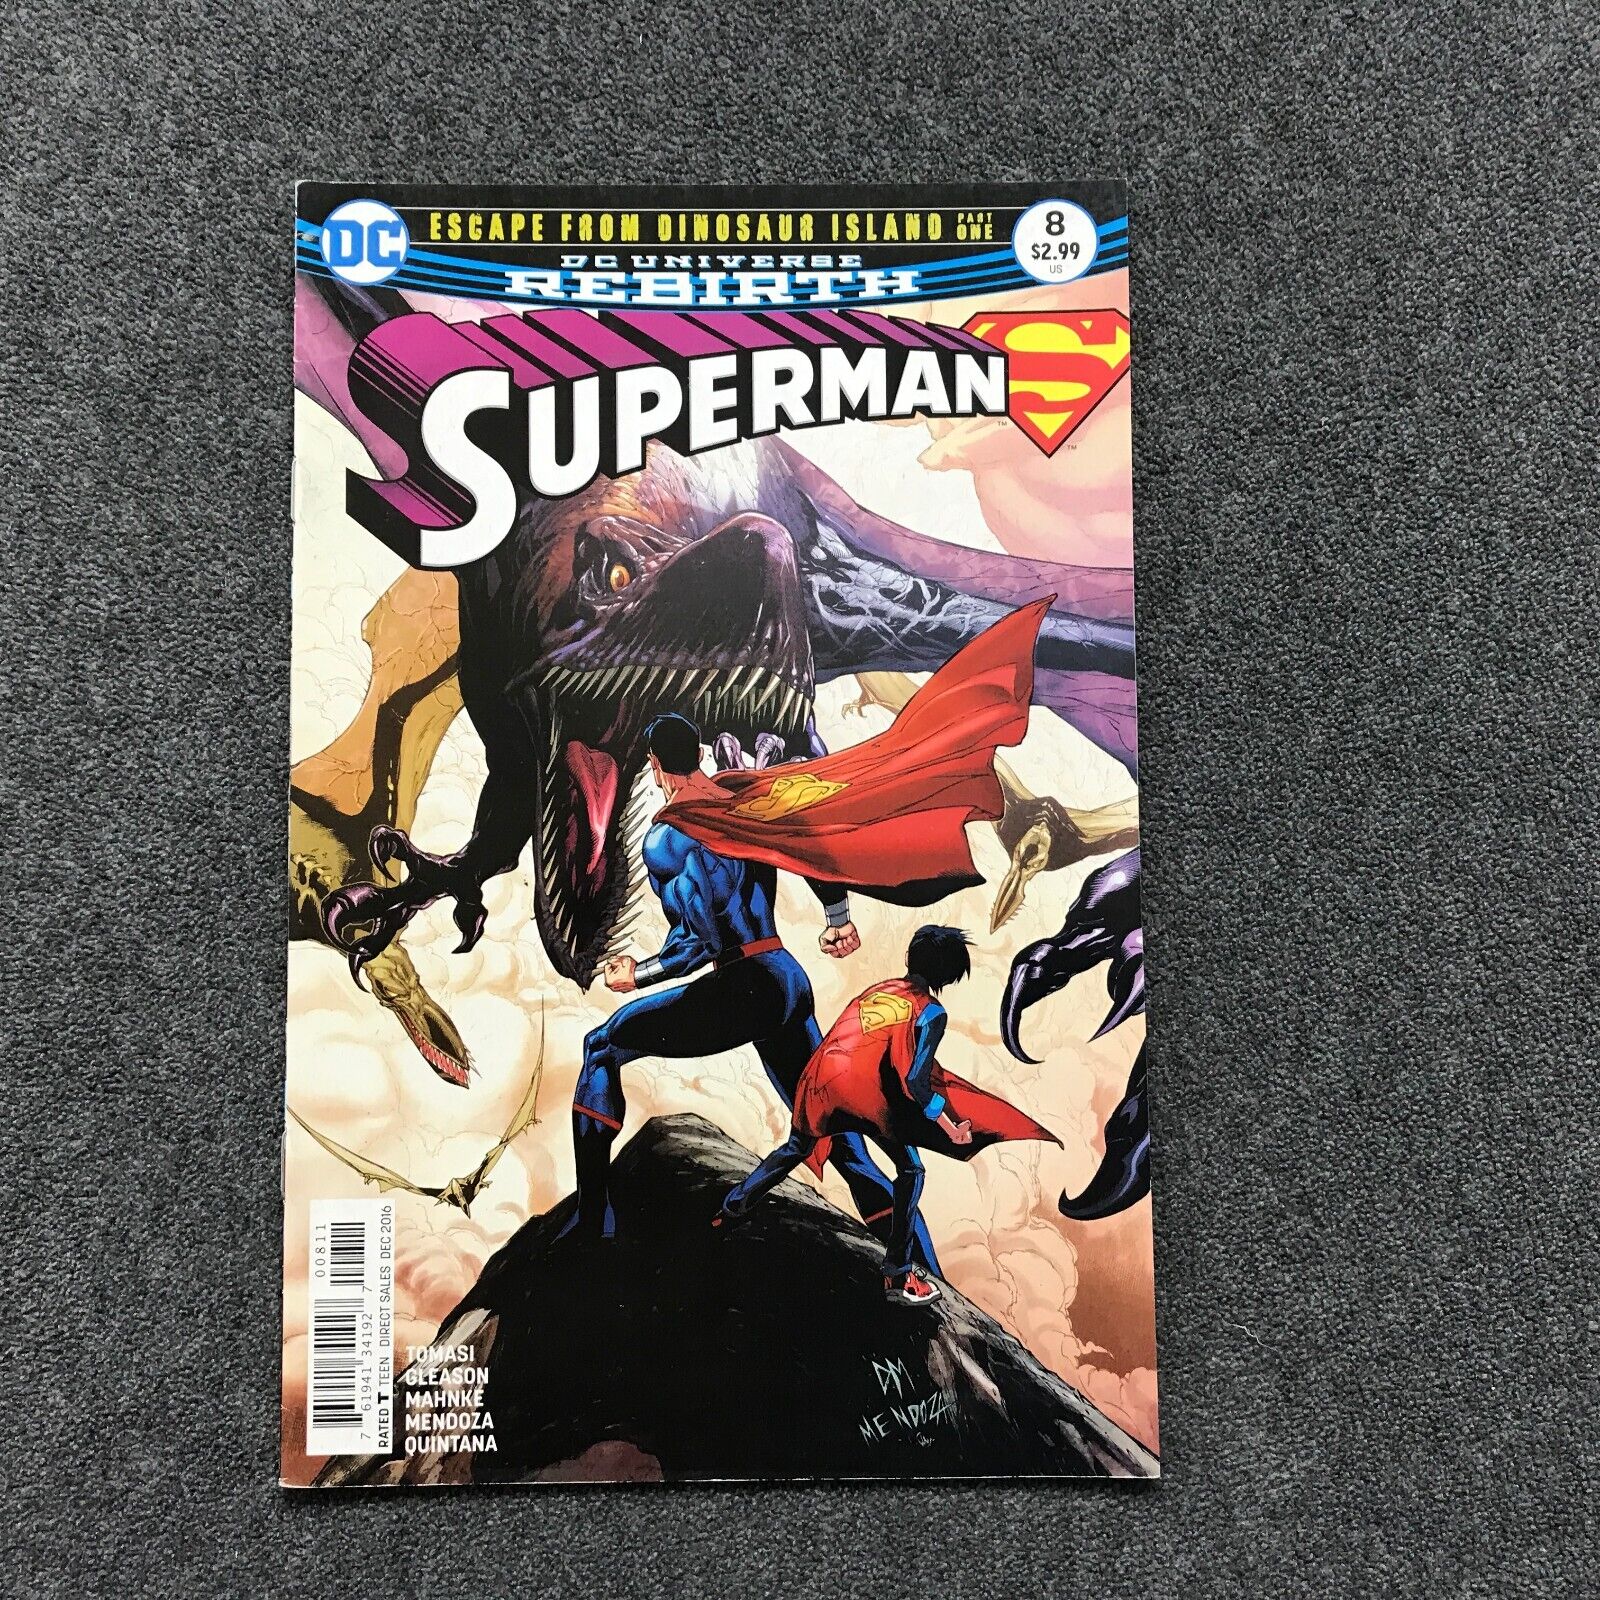 Superman #8 Escape From Dinosaur Island DC Comics Rebirth 2016 Tomasi & Gleason